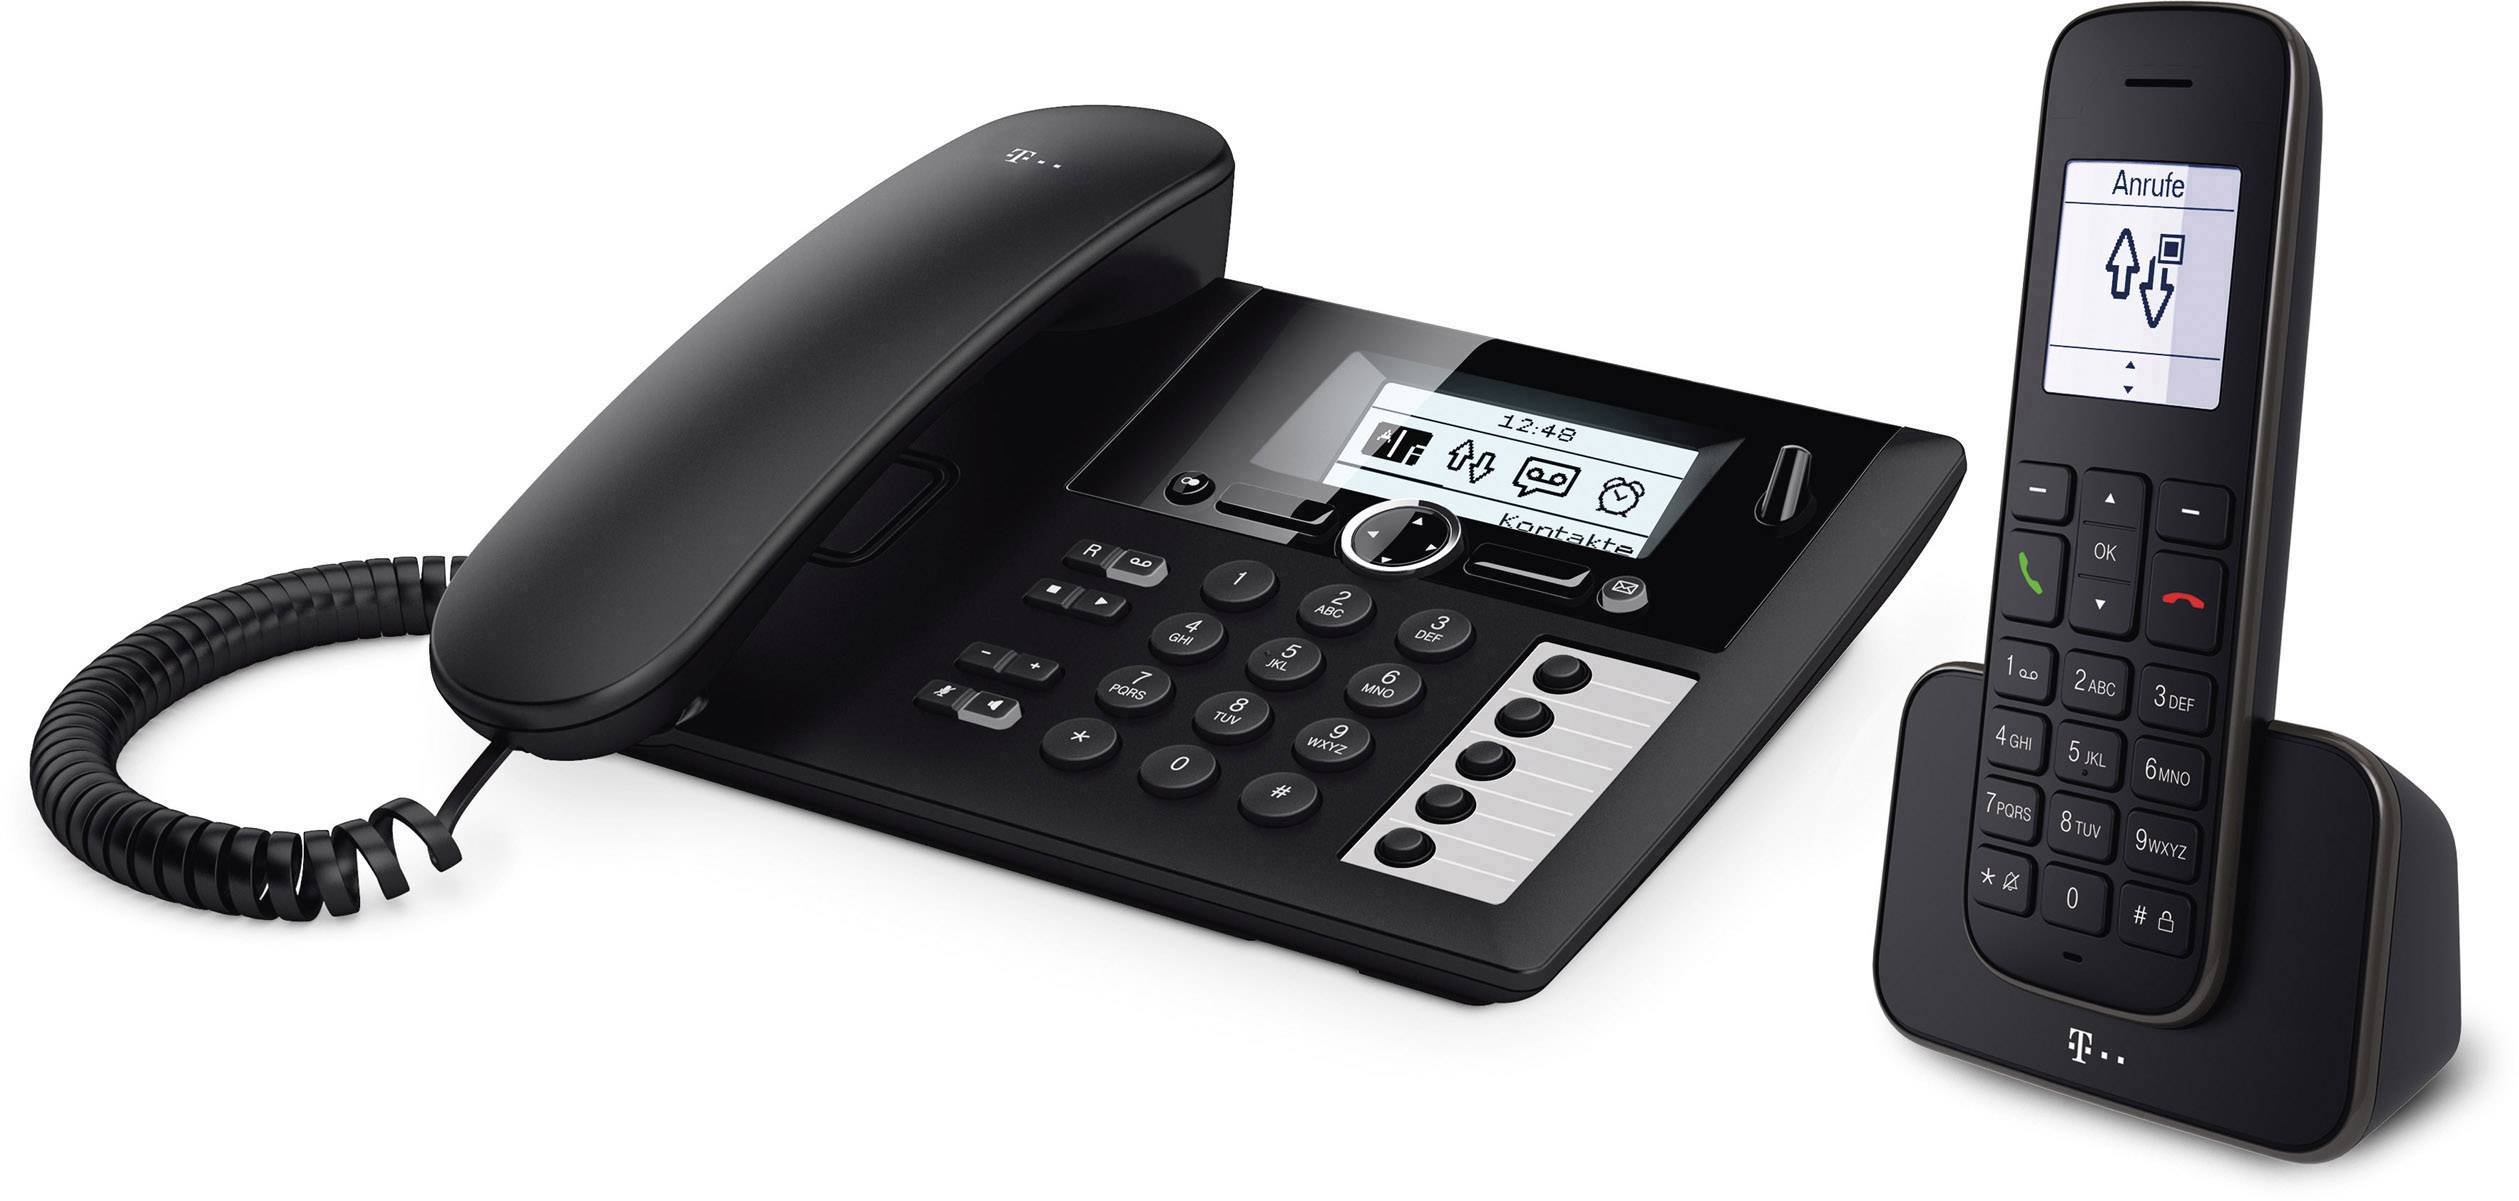 Telekom PA Schwarz kaufen DECT Mobilteil 207 1 Telefon analog inkl. Schnurloses plus Anrufbeantworter